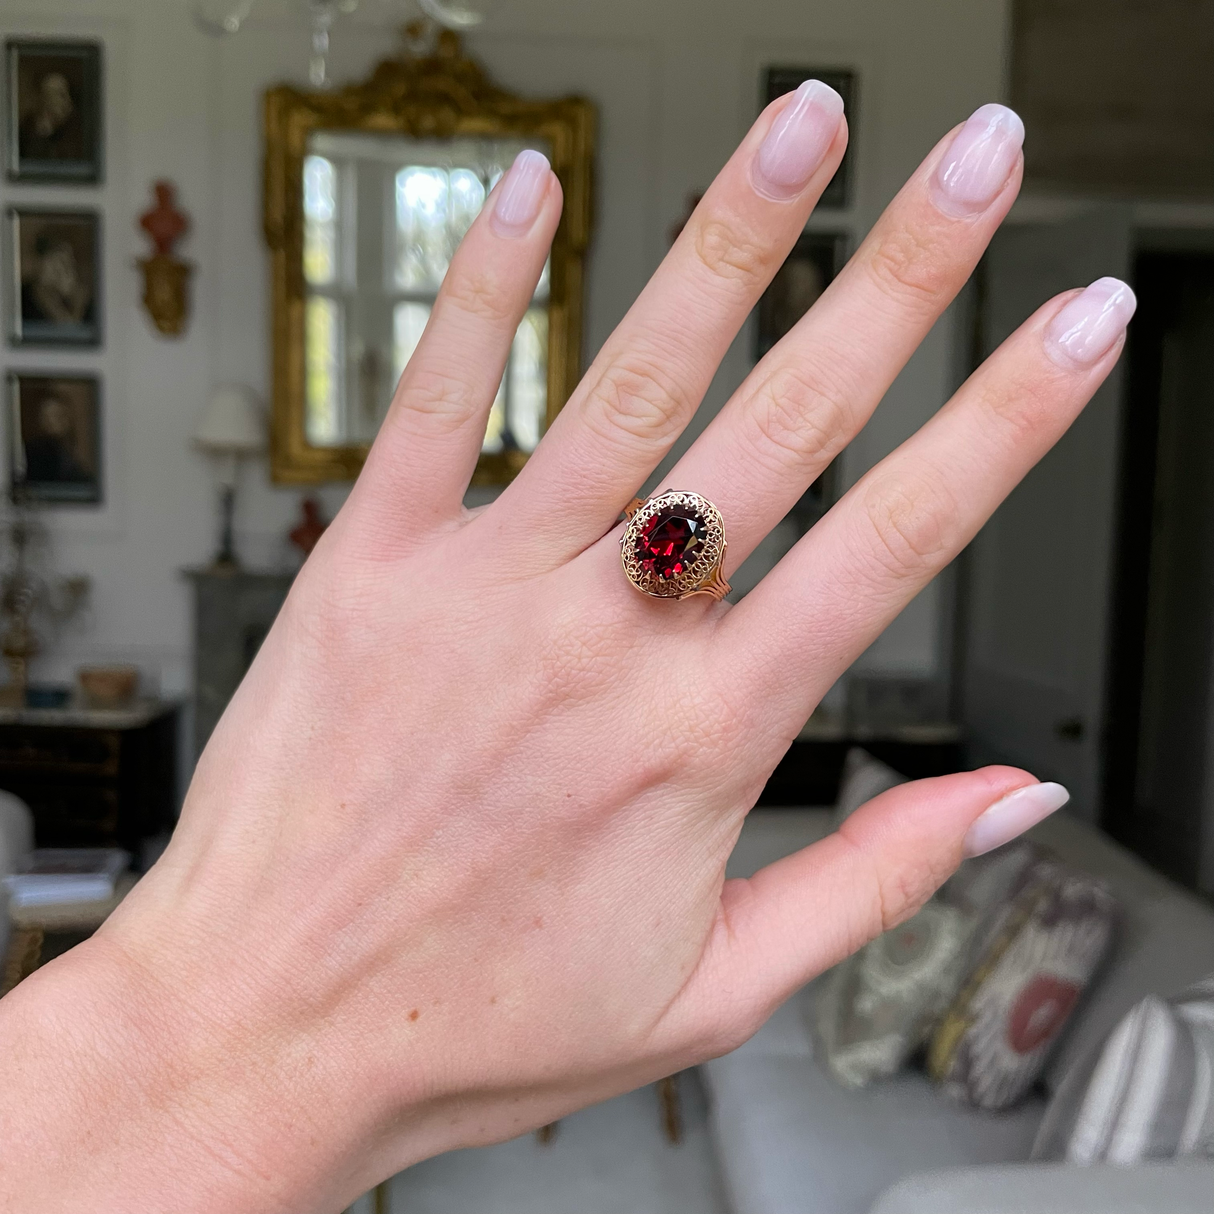 Belle Époque red garnet ring, worn on hand.